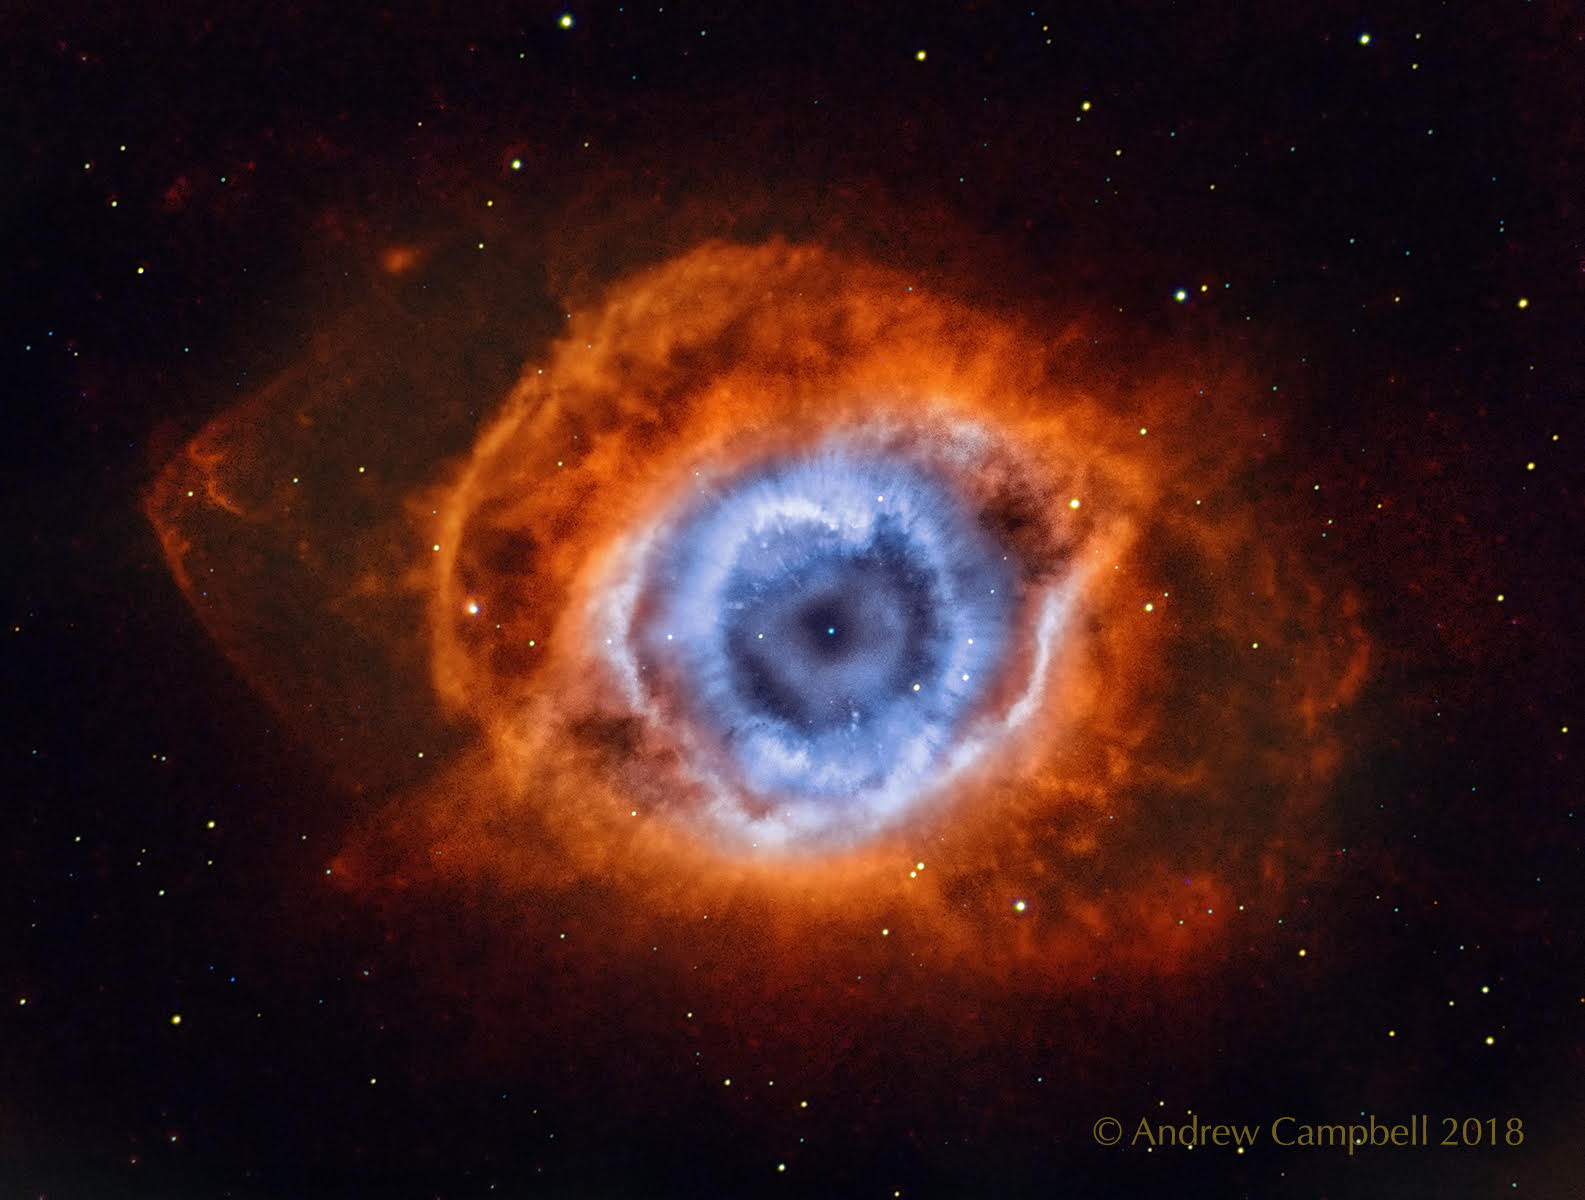 تصویر روز ناسا: چشم خدا